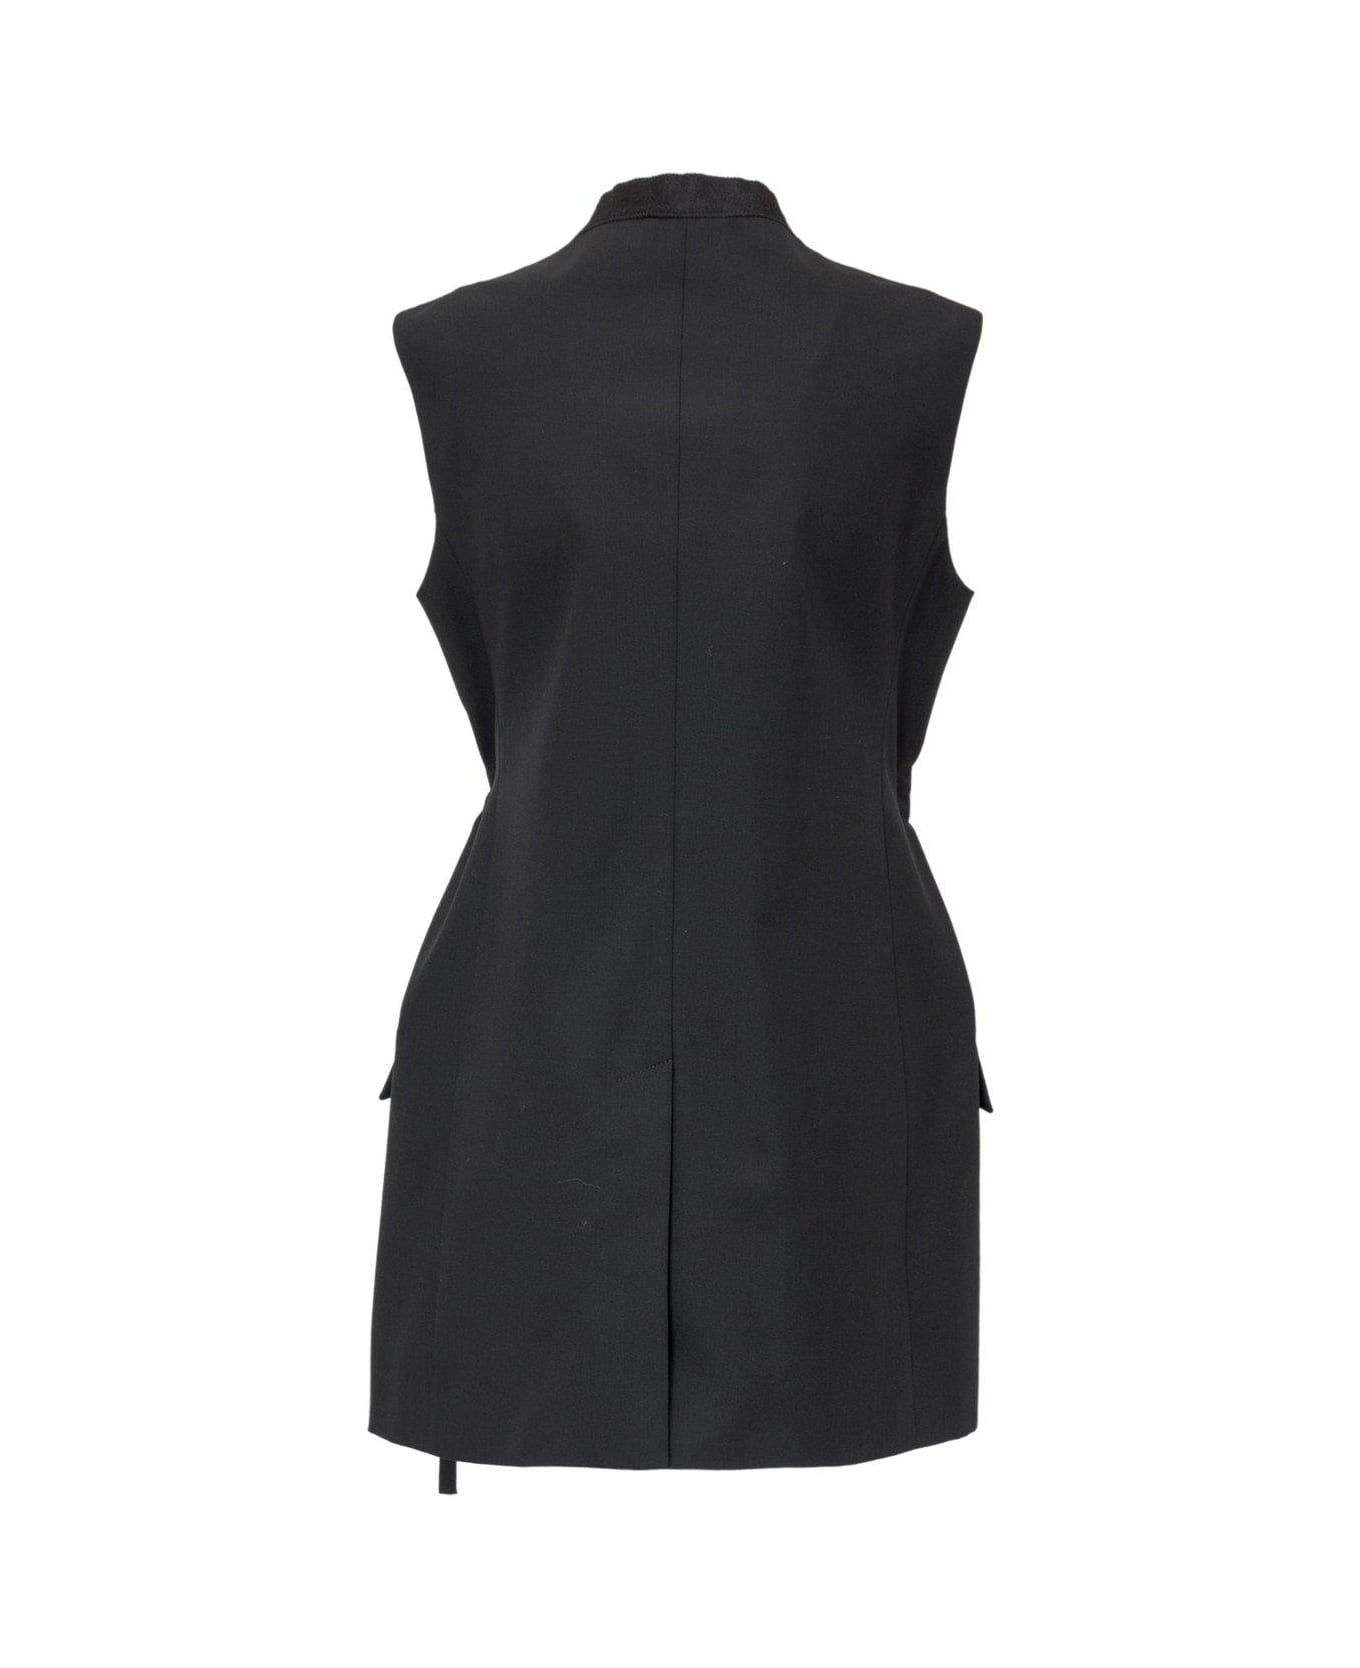 Givenchy Chain Embellished Sleeveless Jacket - BLACK